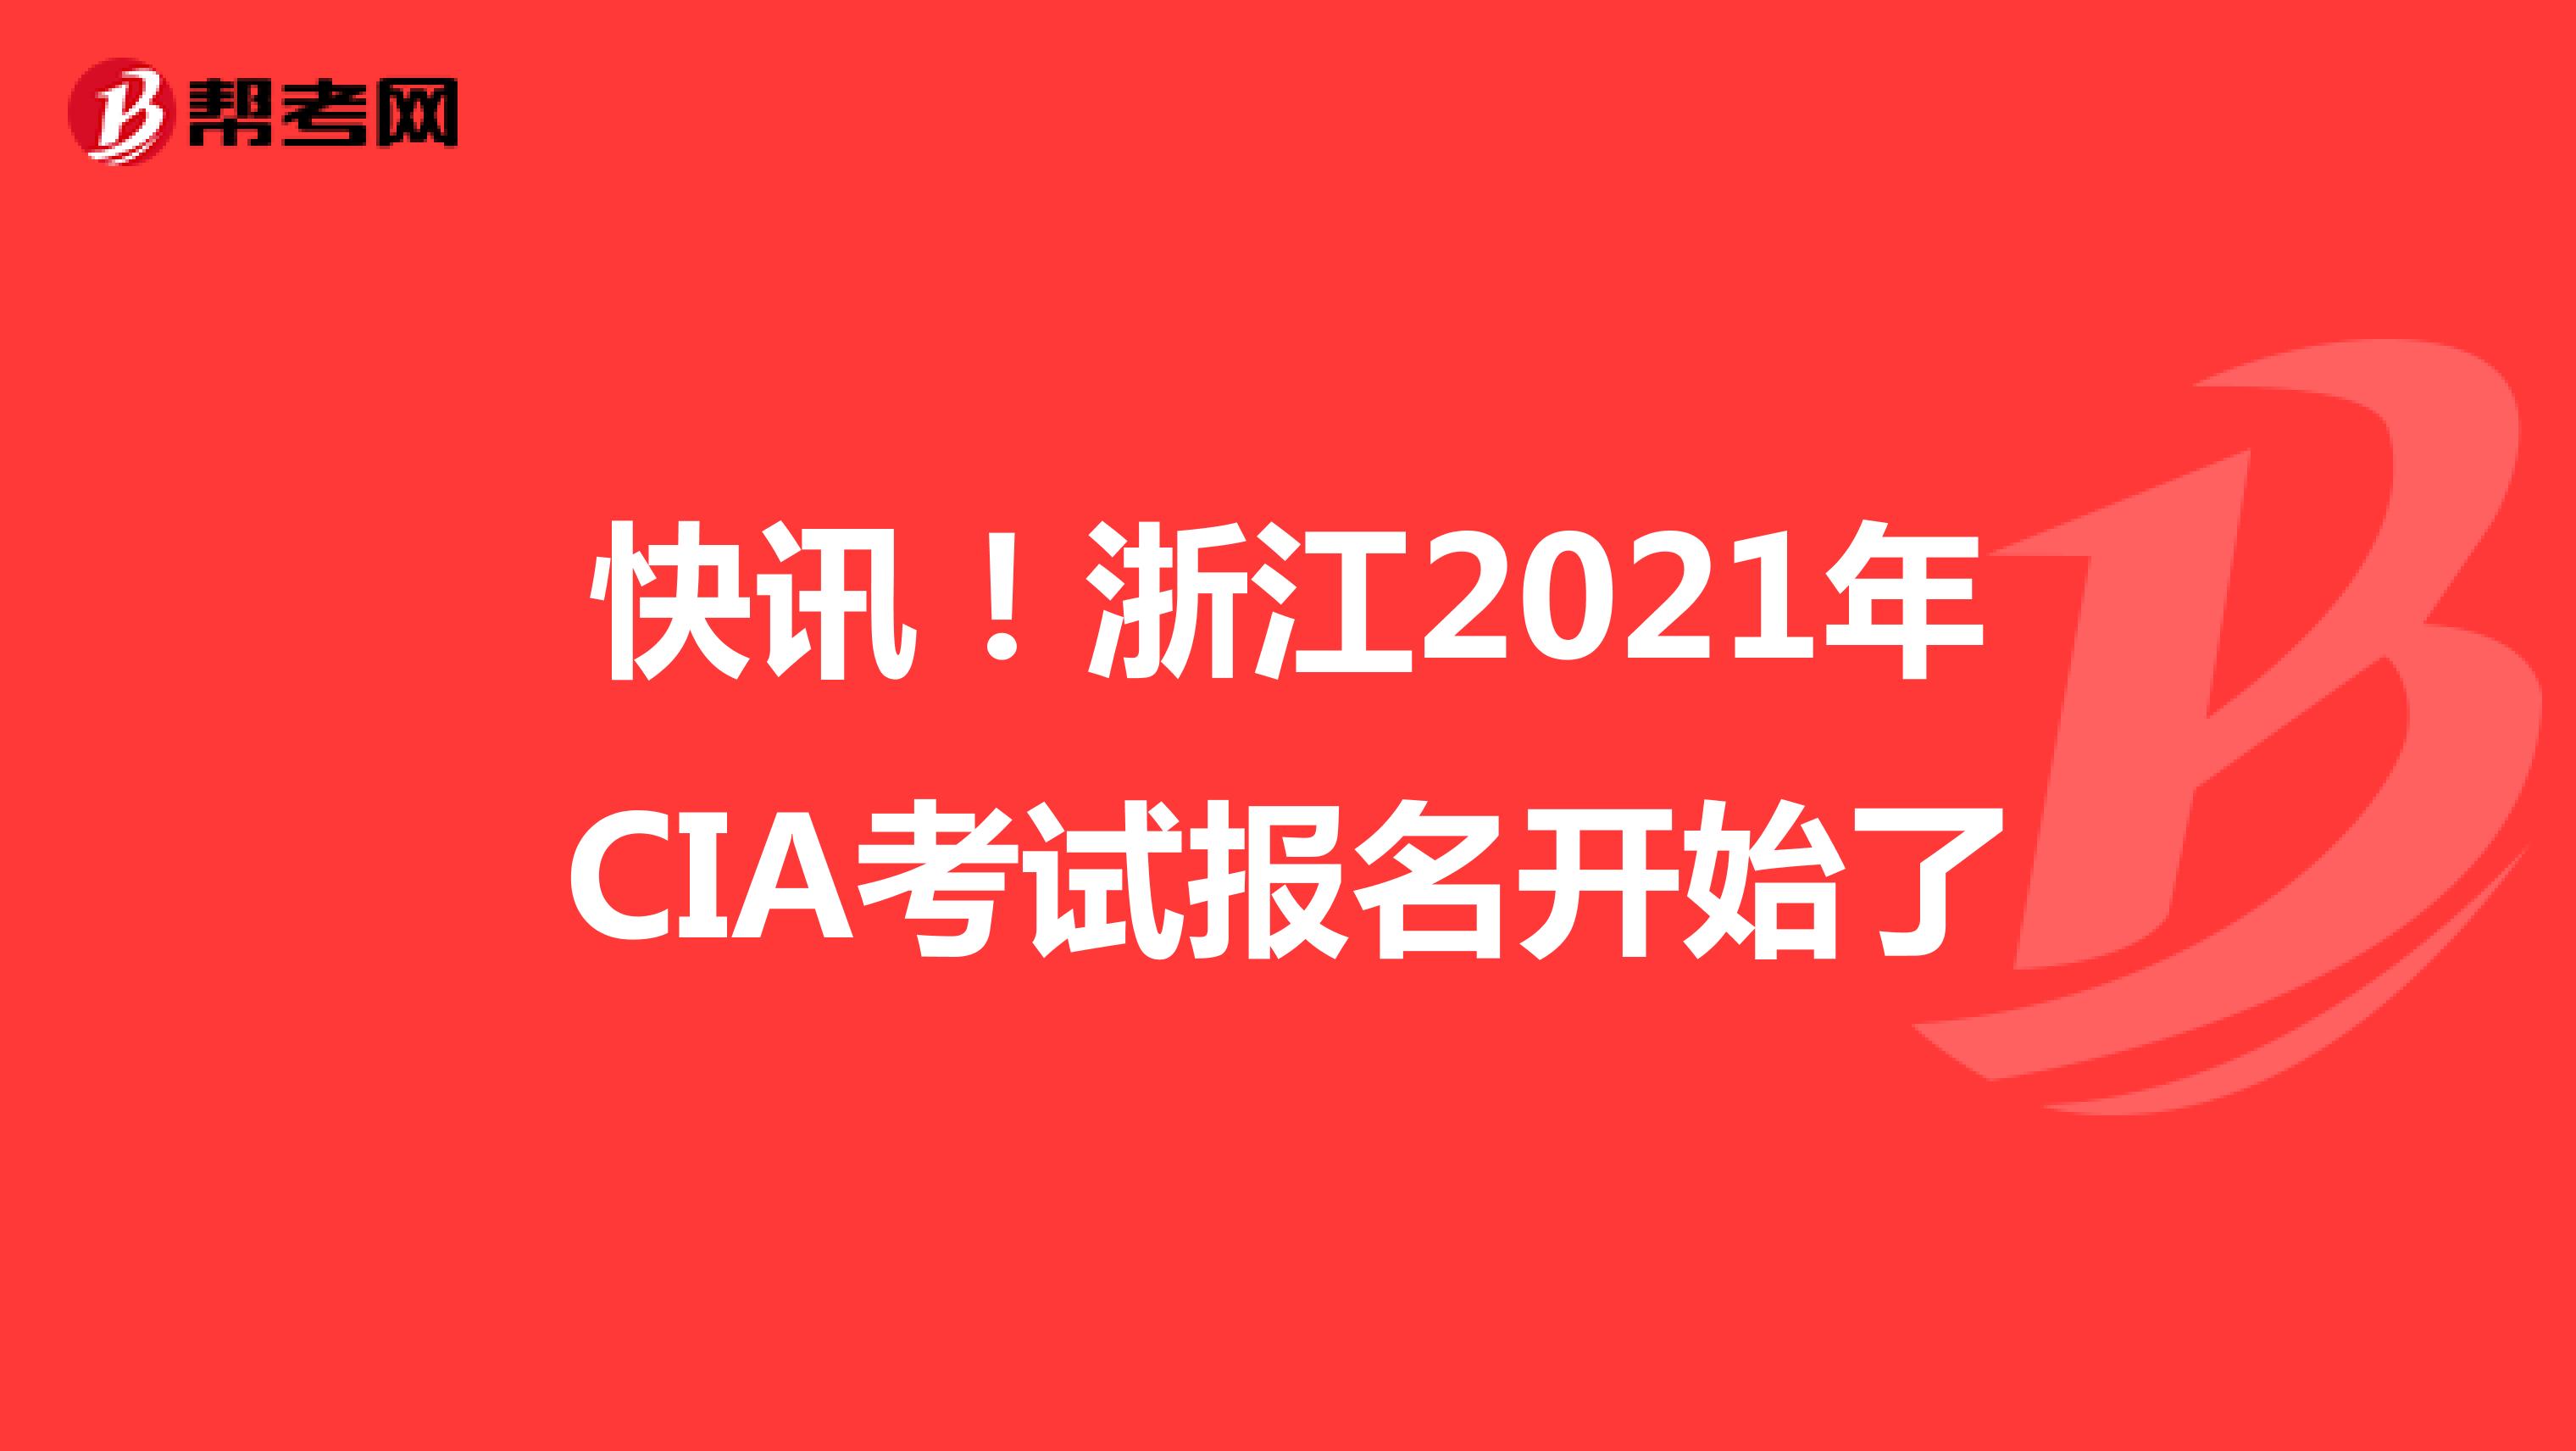 快讯！浙江2021年CIA考试报名开始了